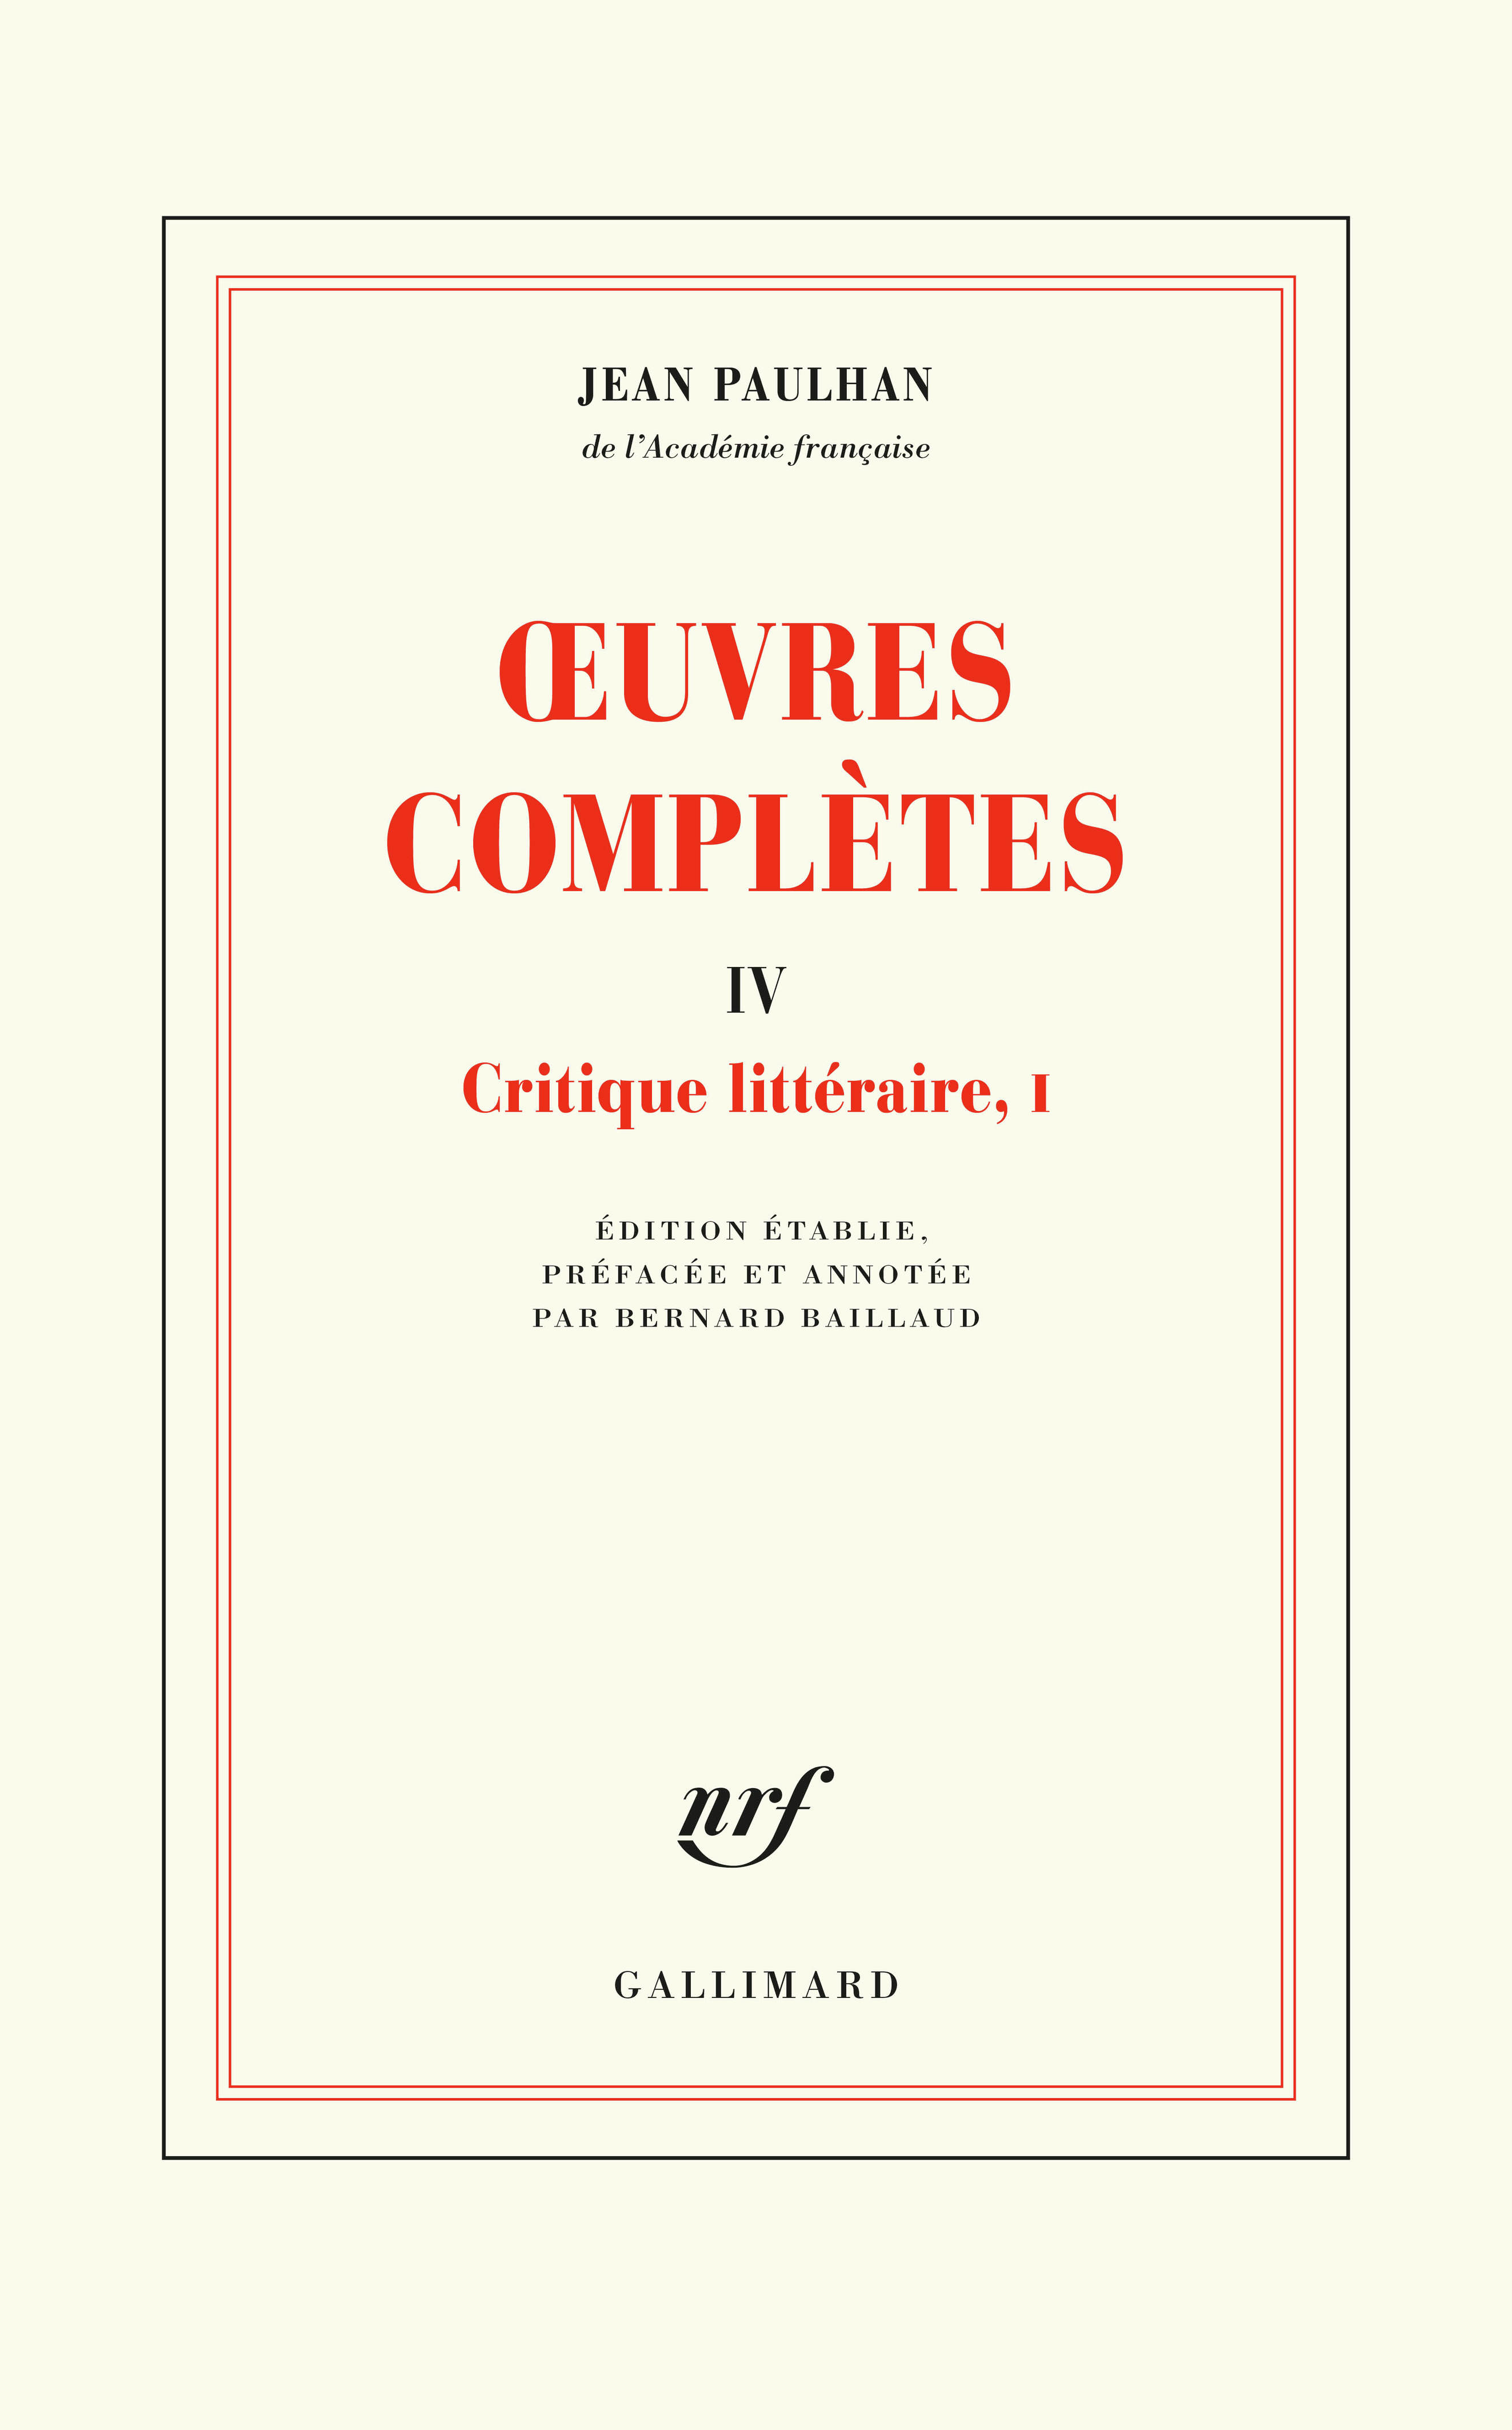 J. Paulhan, Œuvres complètes, t. IV & V. Critique littéraire I & II